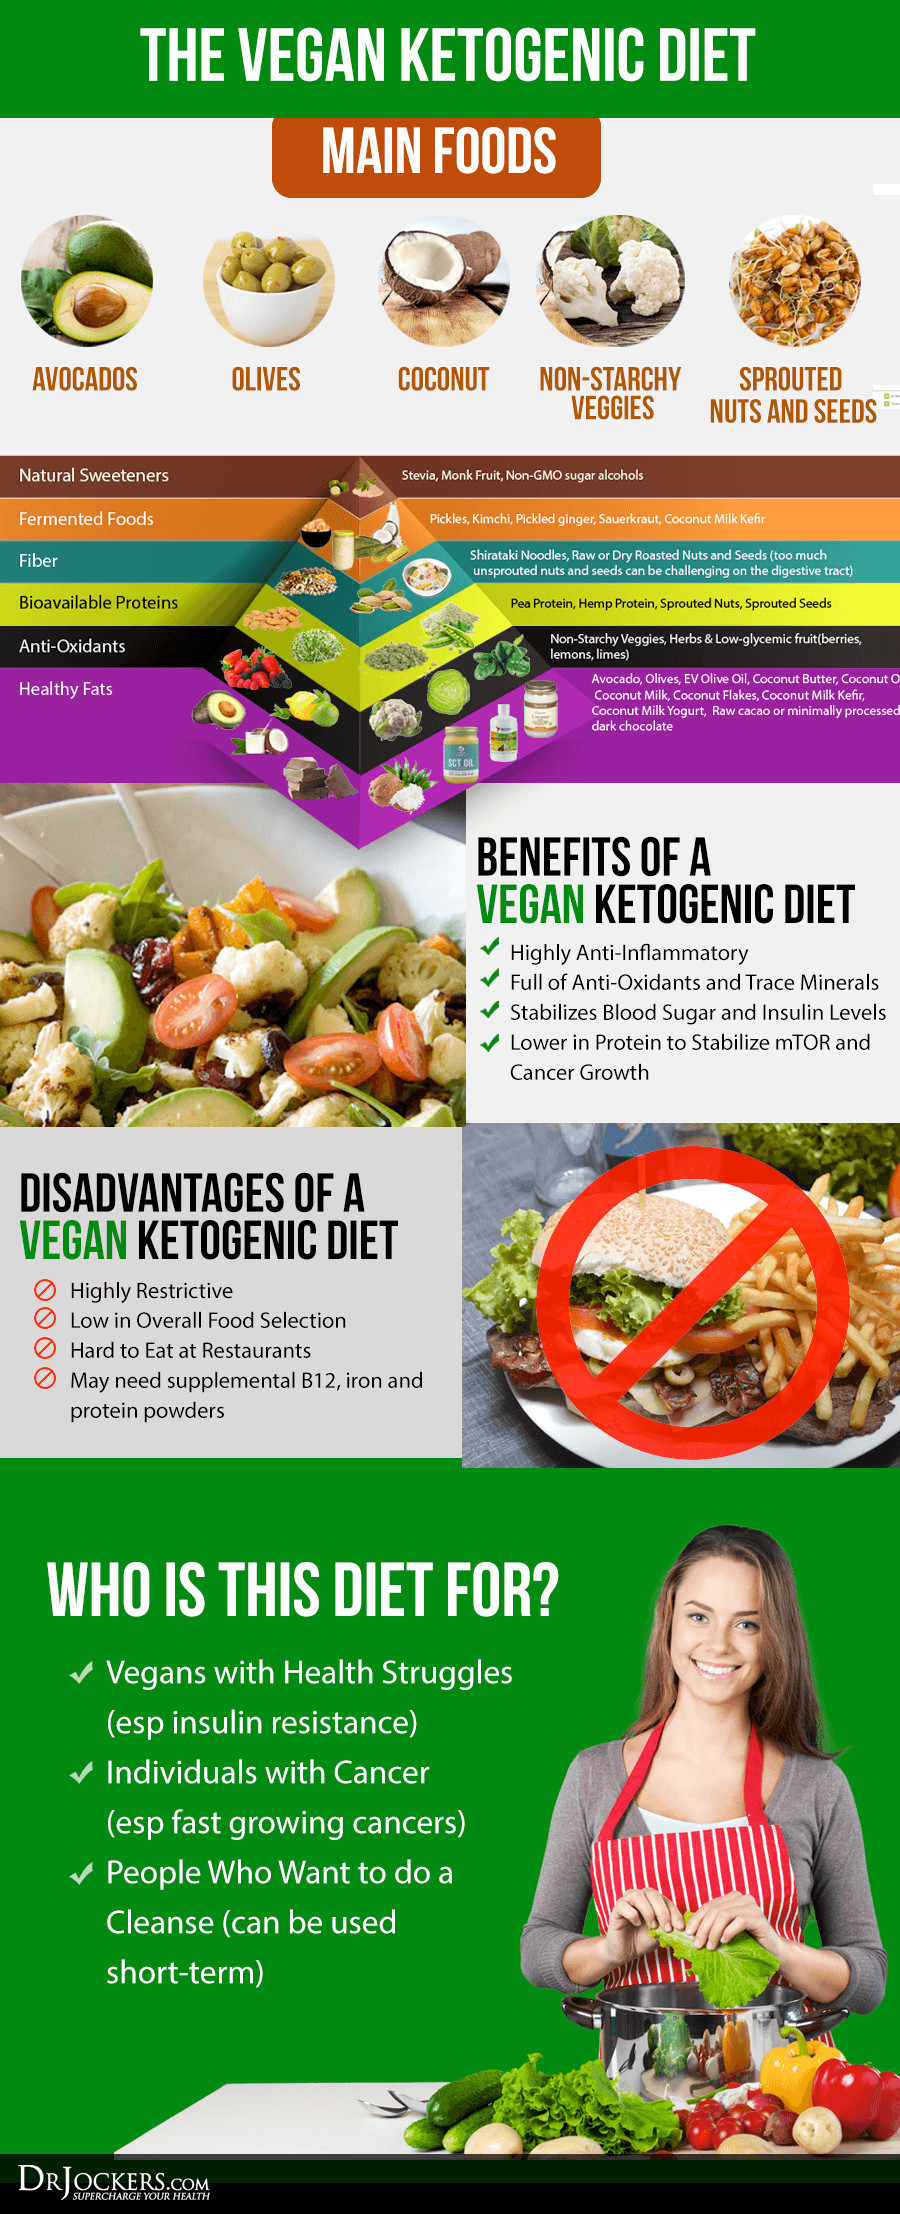 Vegan Keto Food List
 How To Follow A Vegan Ketogenic Diet DrJockers